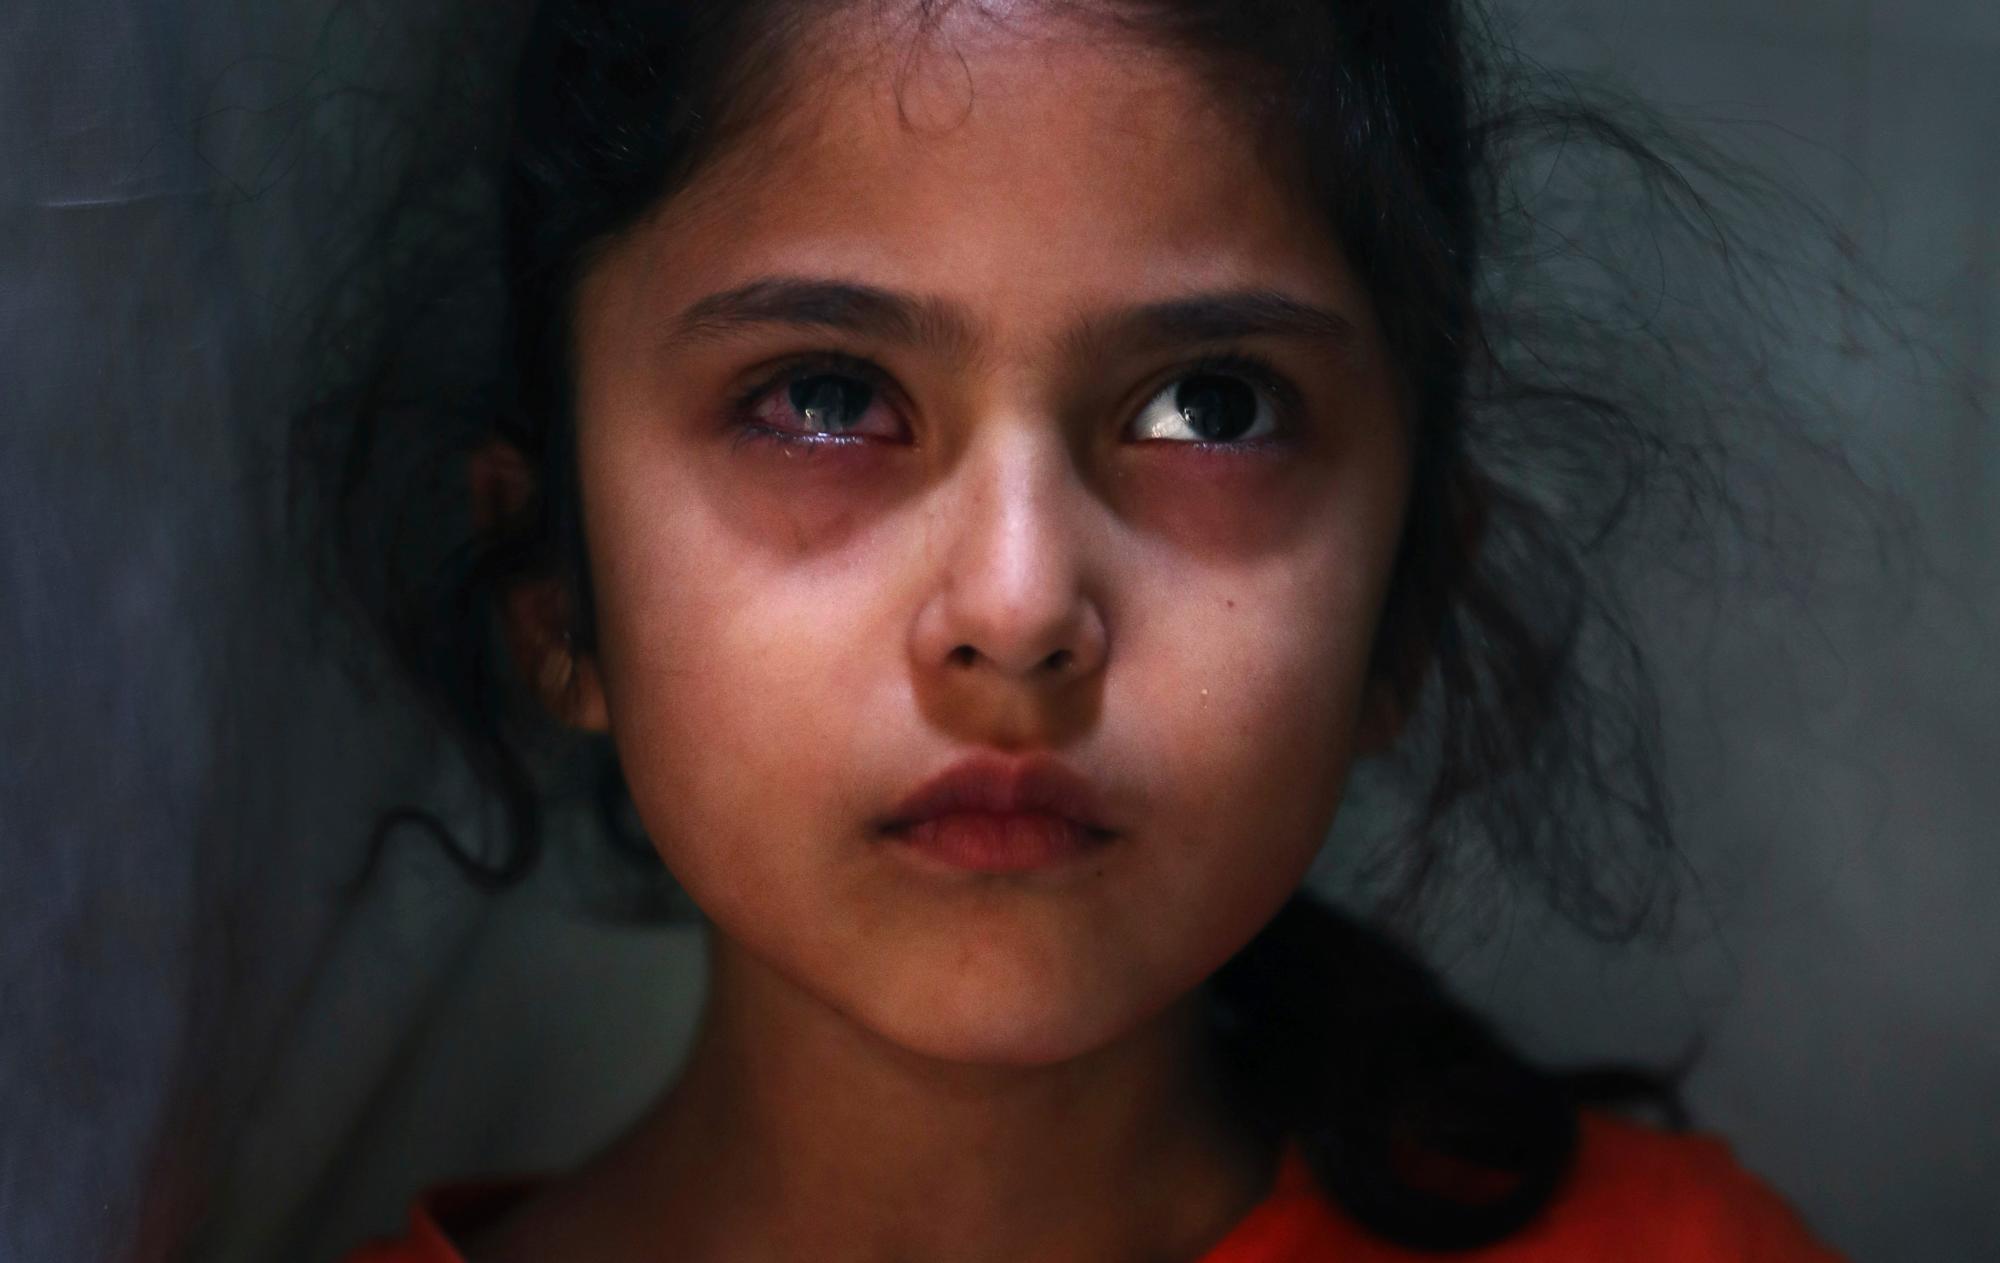 Muneefa Nazir, de seis años, una niña de Cachemira cuyo ojo derecho fue golpeado por una bola de mármol disparada supuestamente por soldados paramilitares indios el 12 de agosto, se encuentra frente a su casa en Srinagar, Cachemira controlada por la India el 17 de septiembre de 2019. 